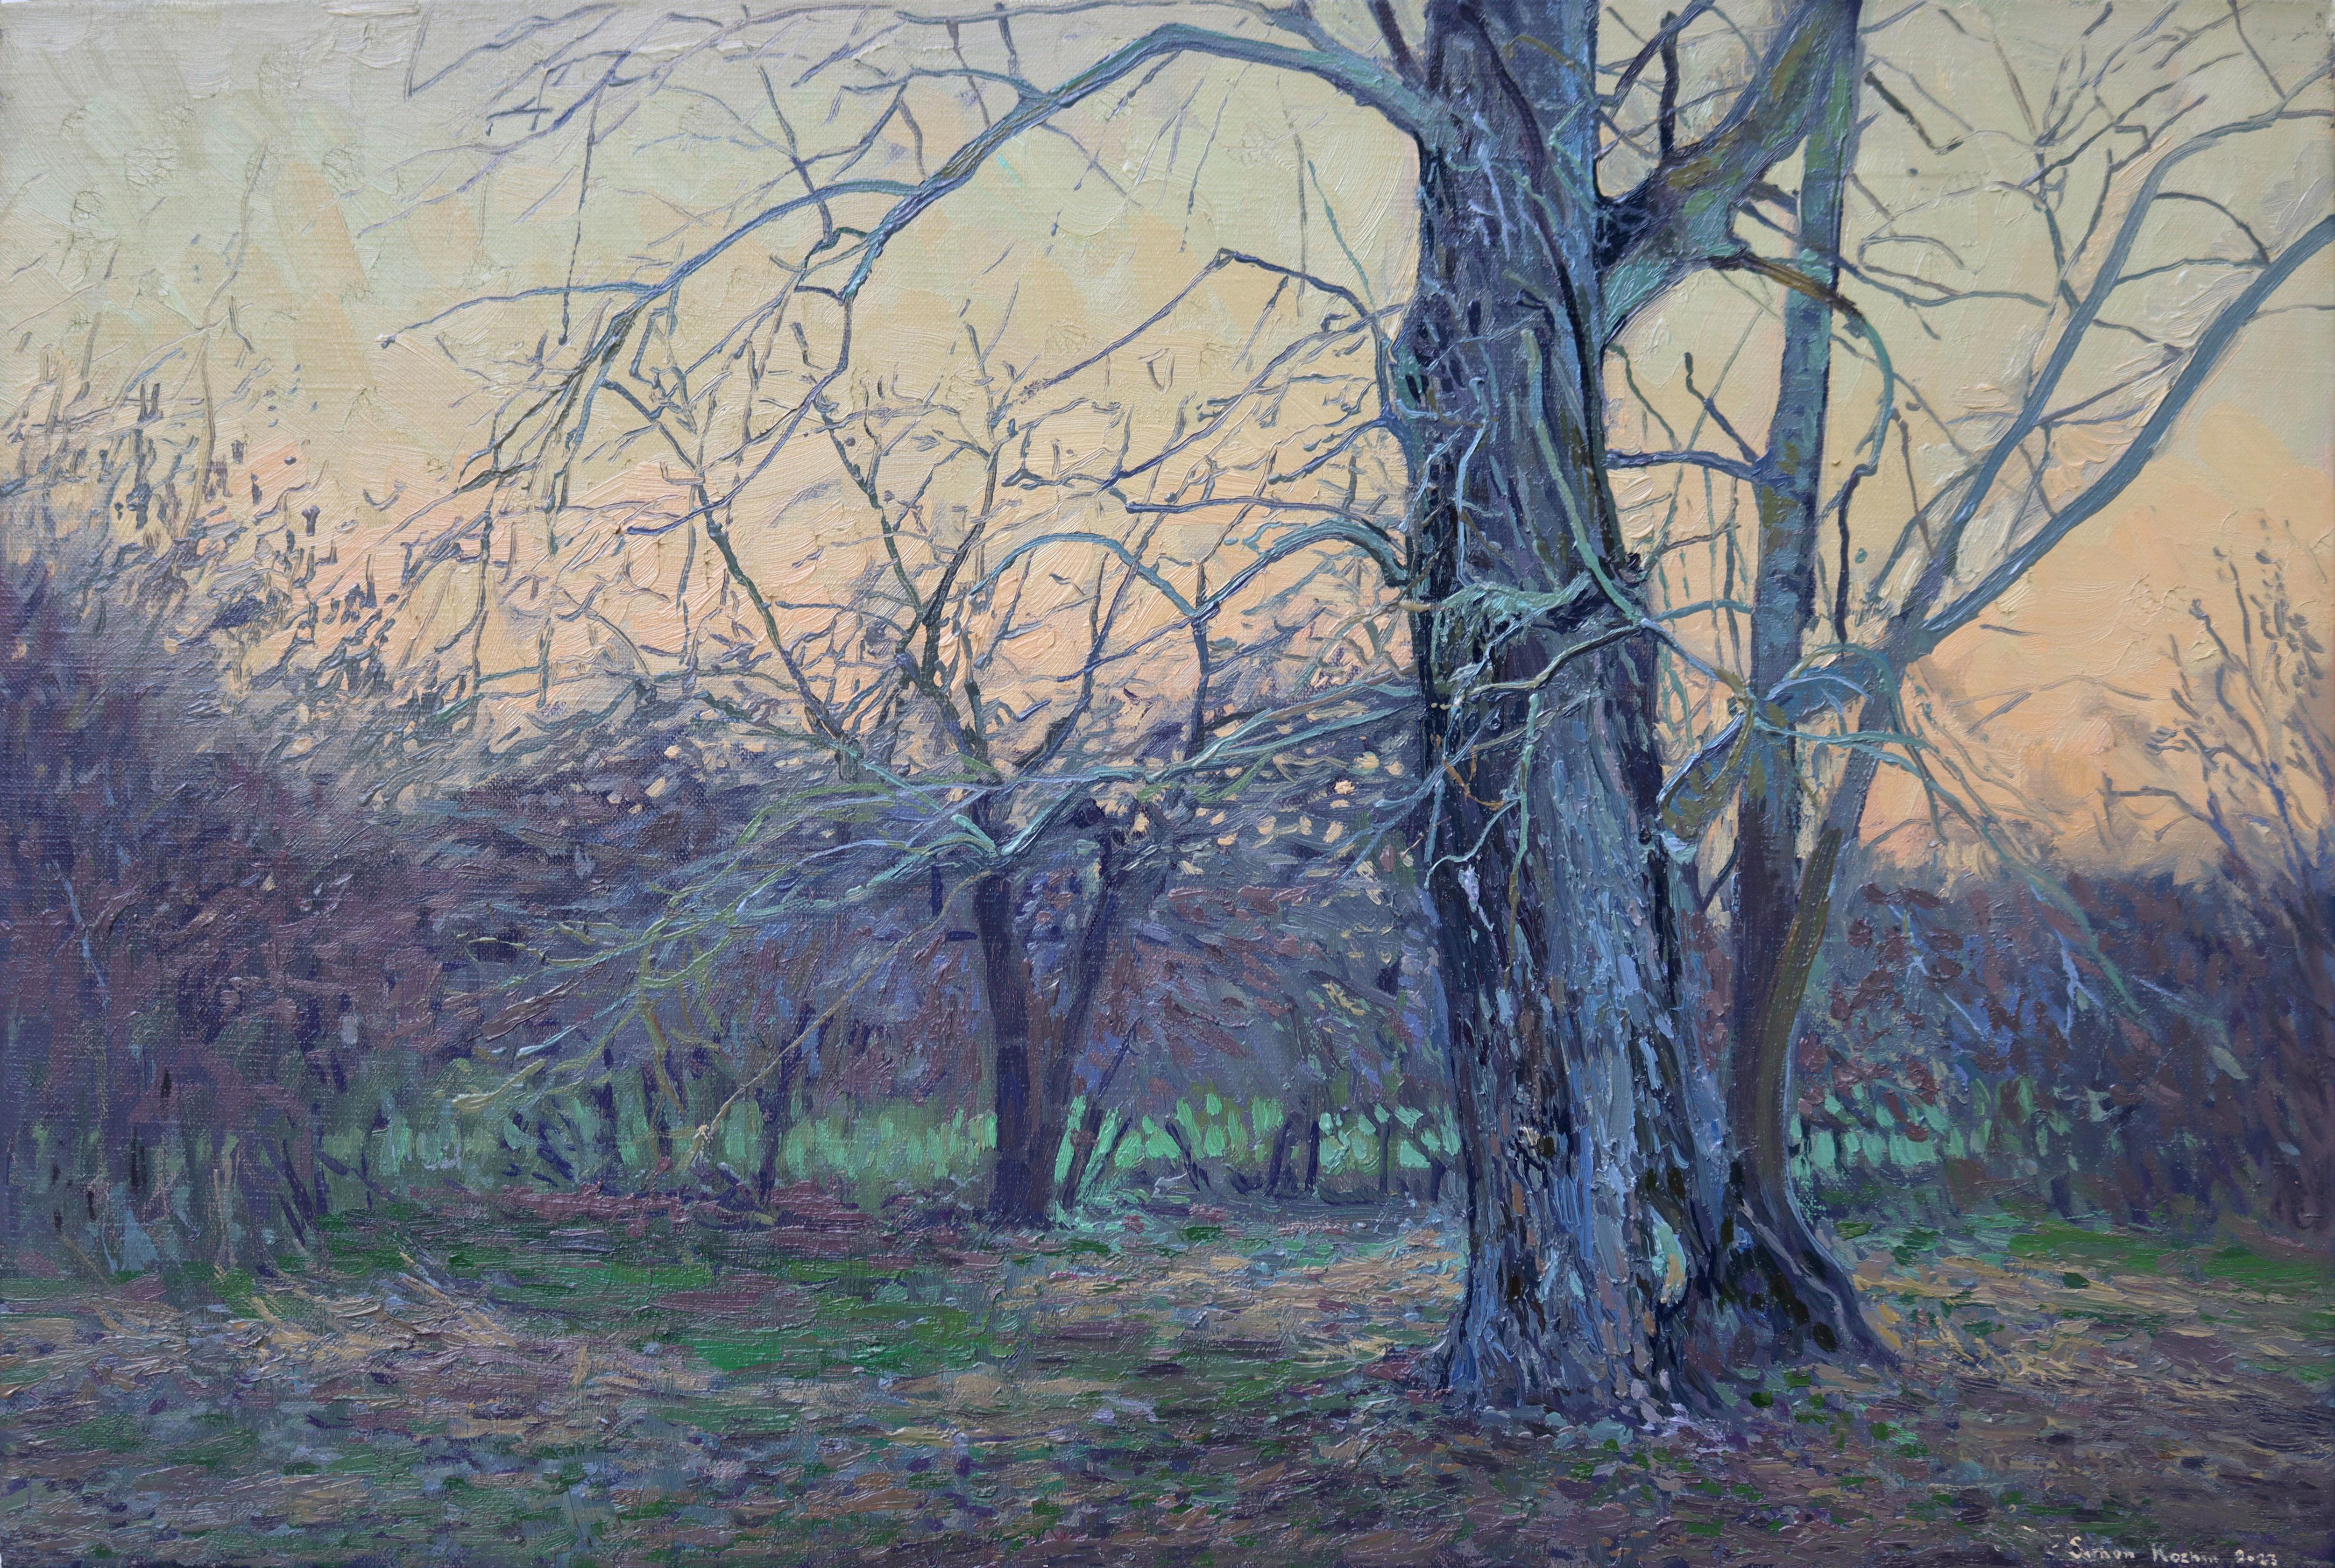 Simon Kozhin Landscape Painting - April evening near the poplar